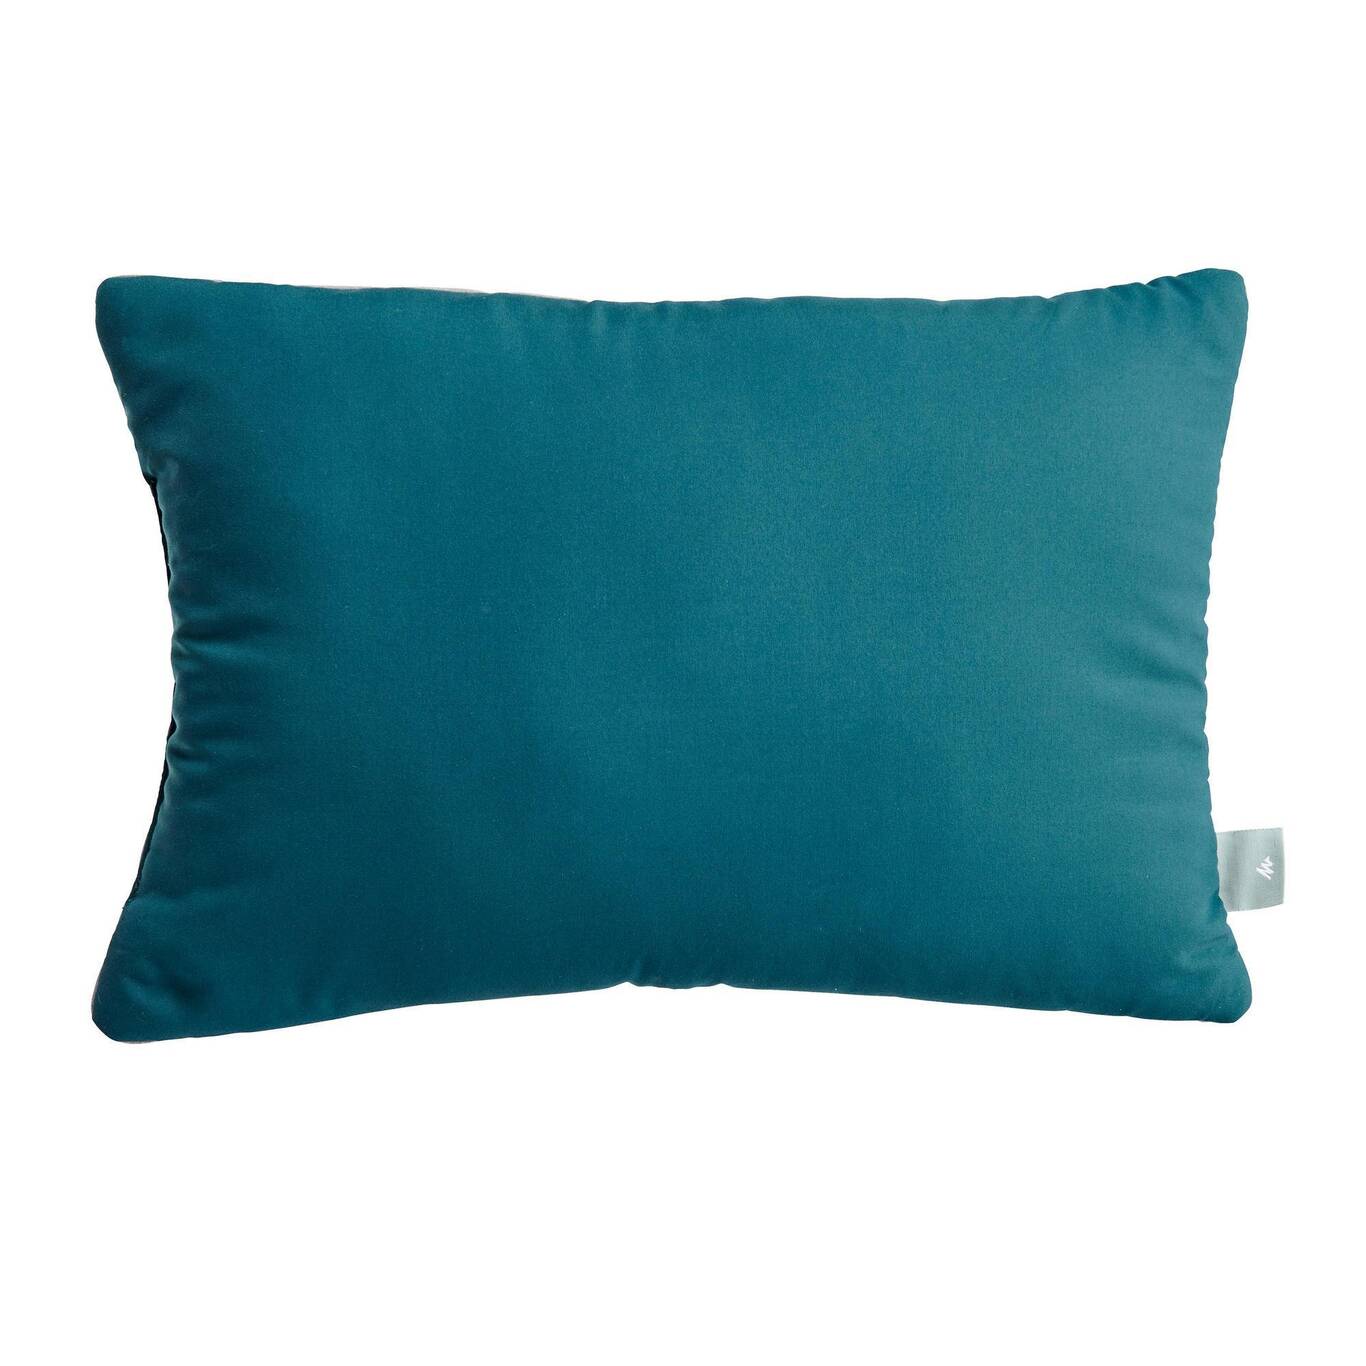 US Camping Pillow - Comfort